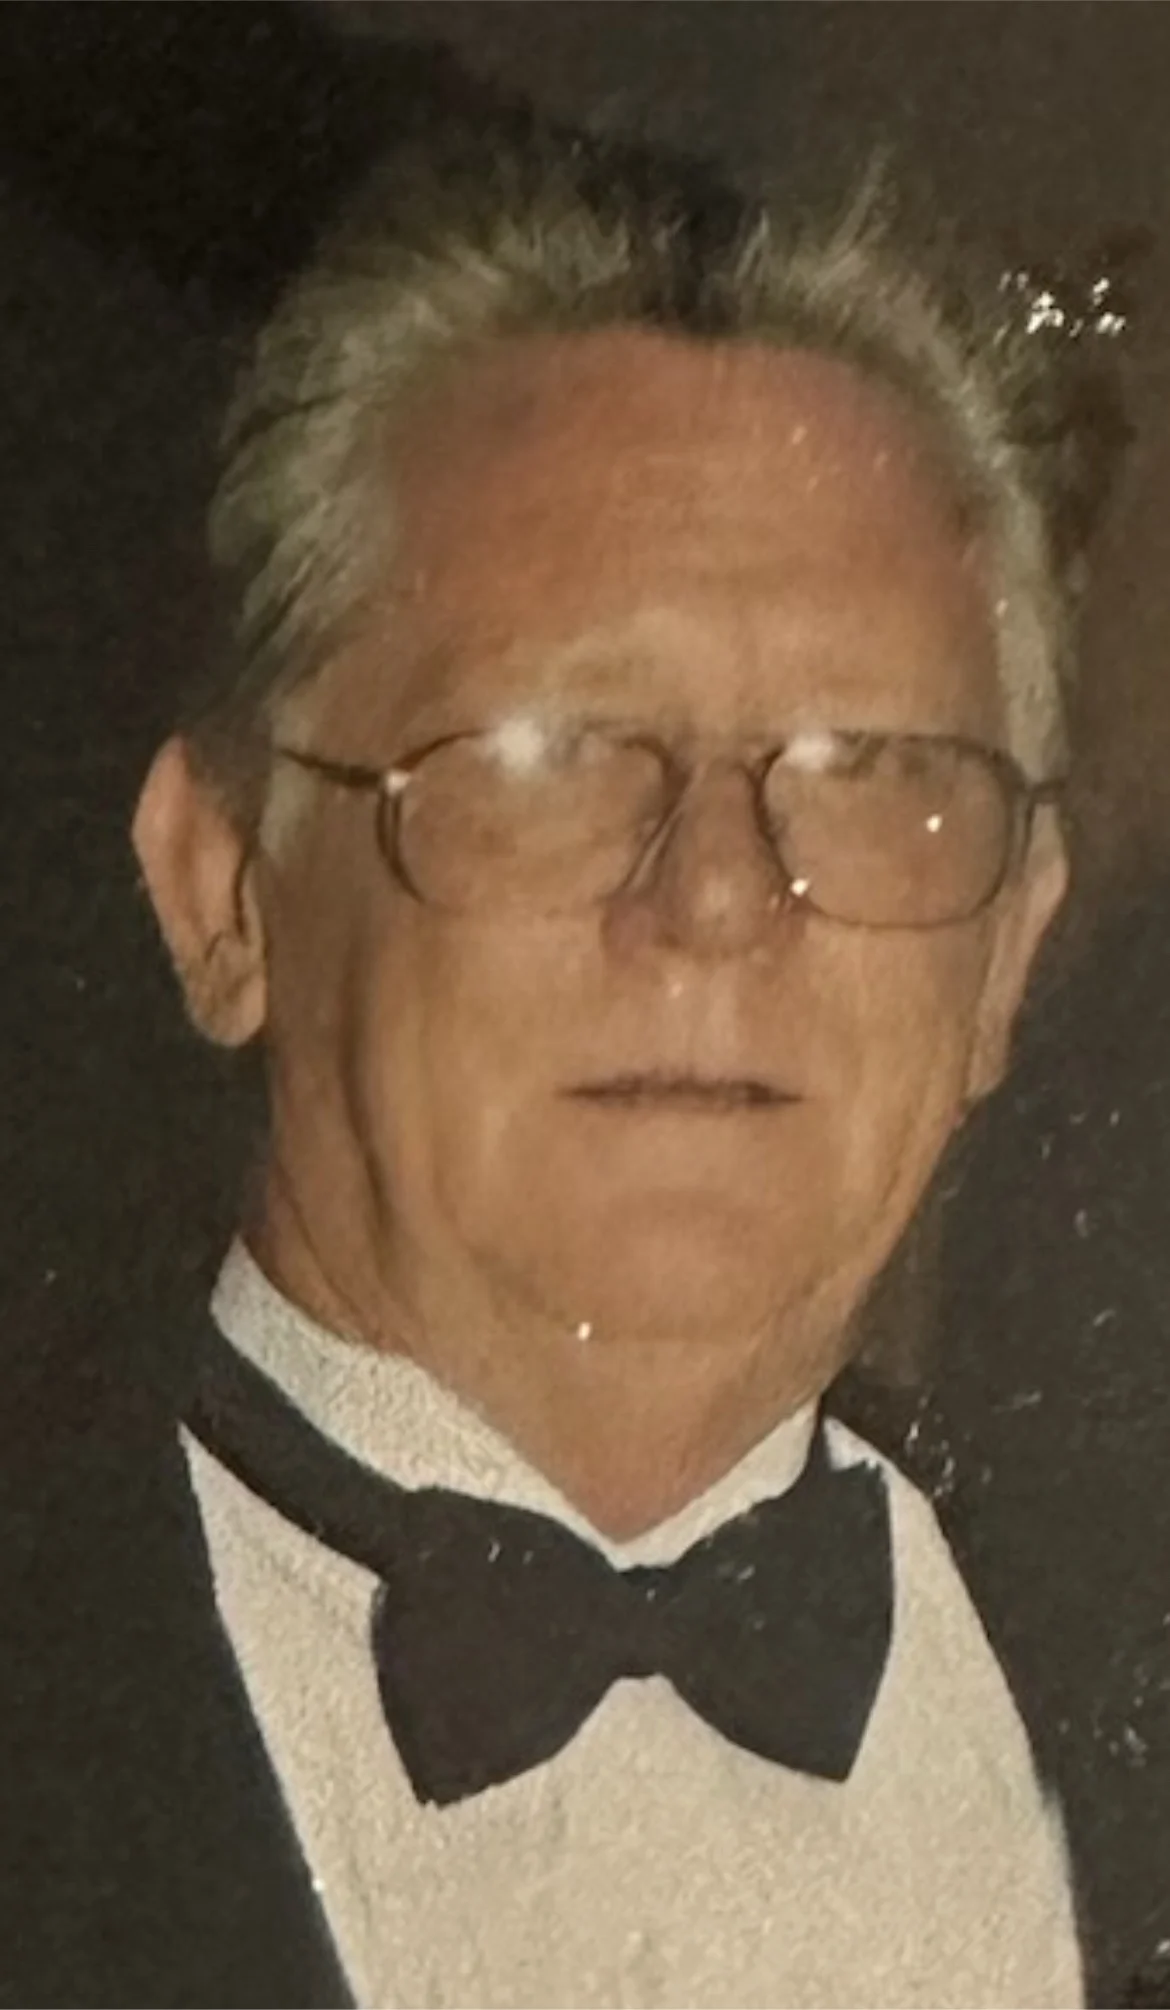  John Vance Horne II, 75 